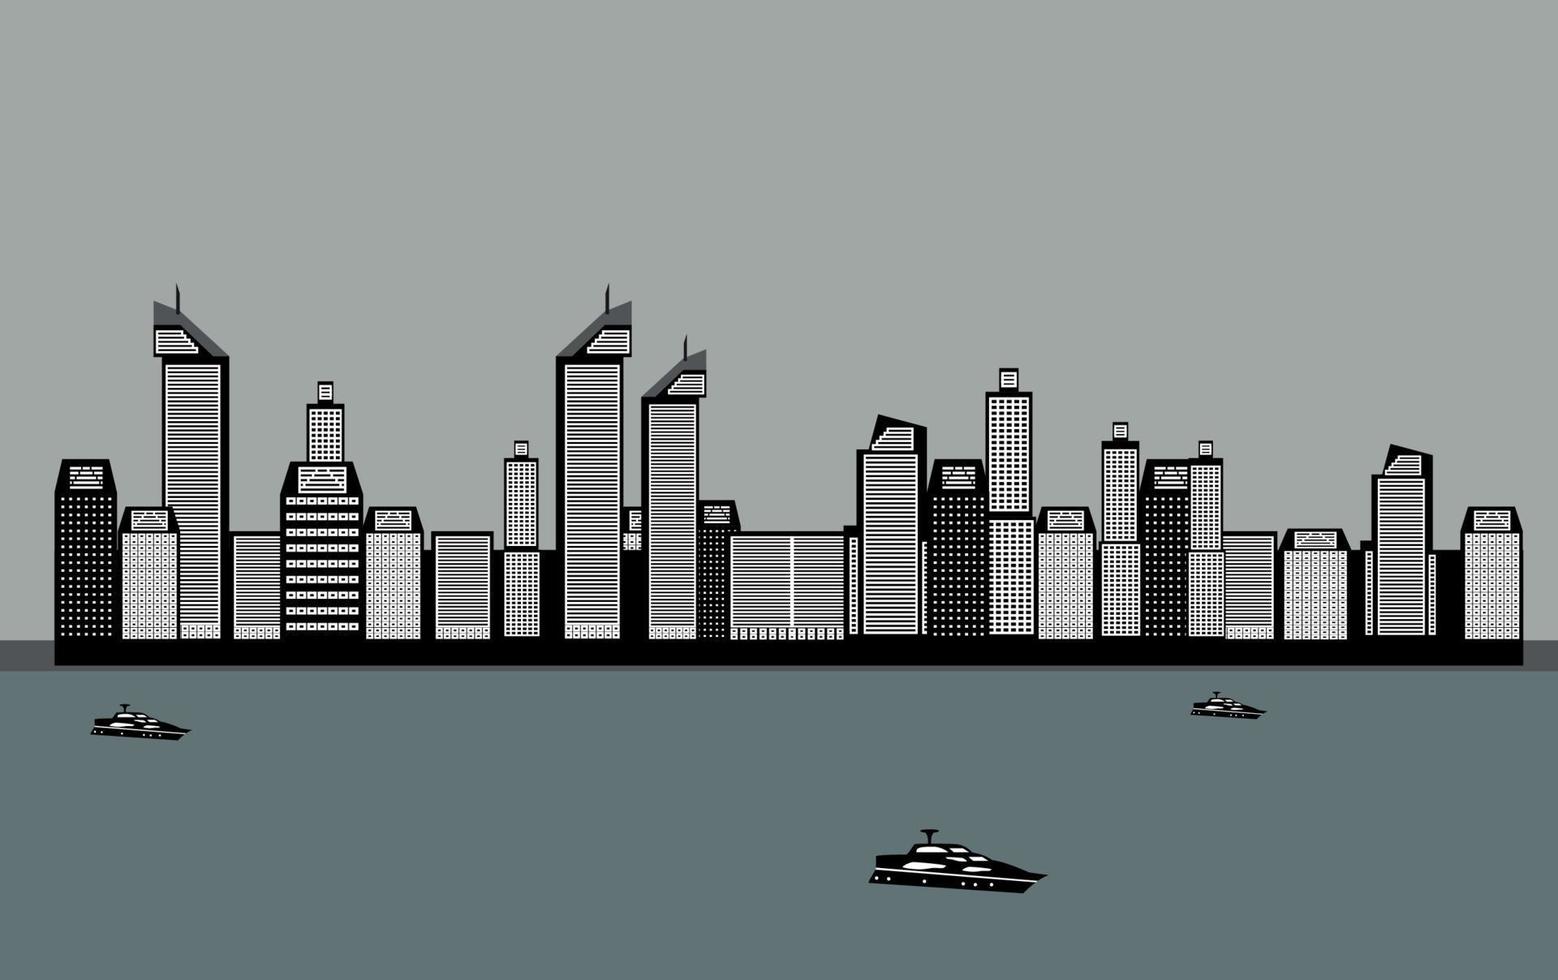 edifici isolati della città, mare, barca. illustrazione vettoriale